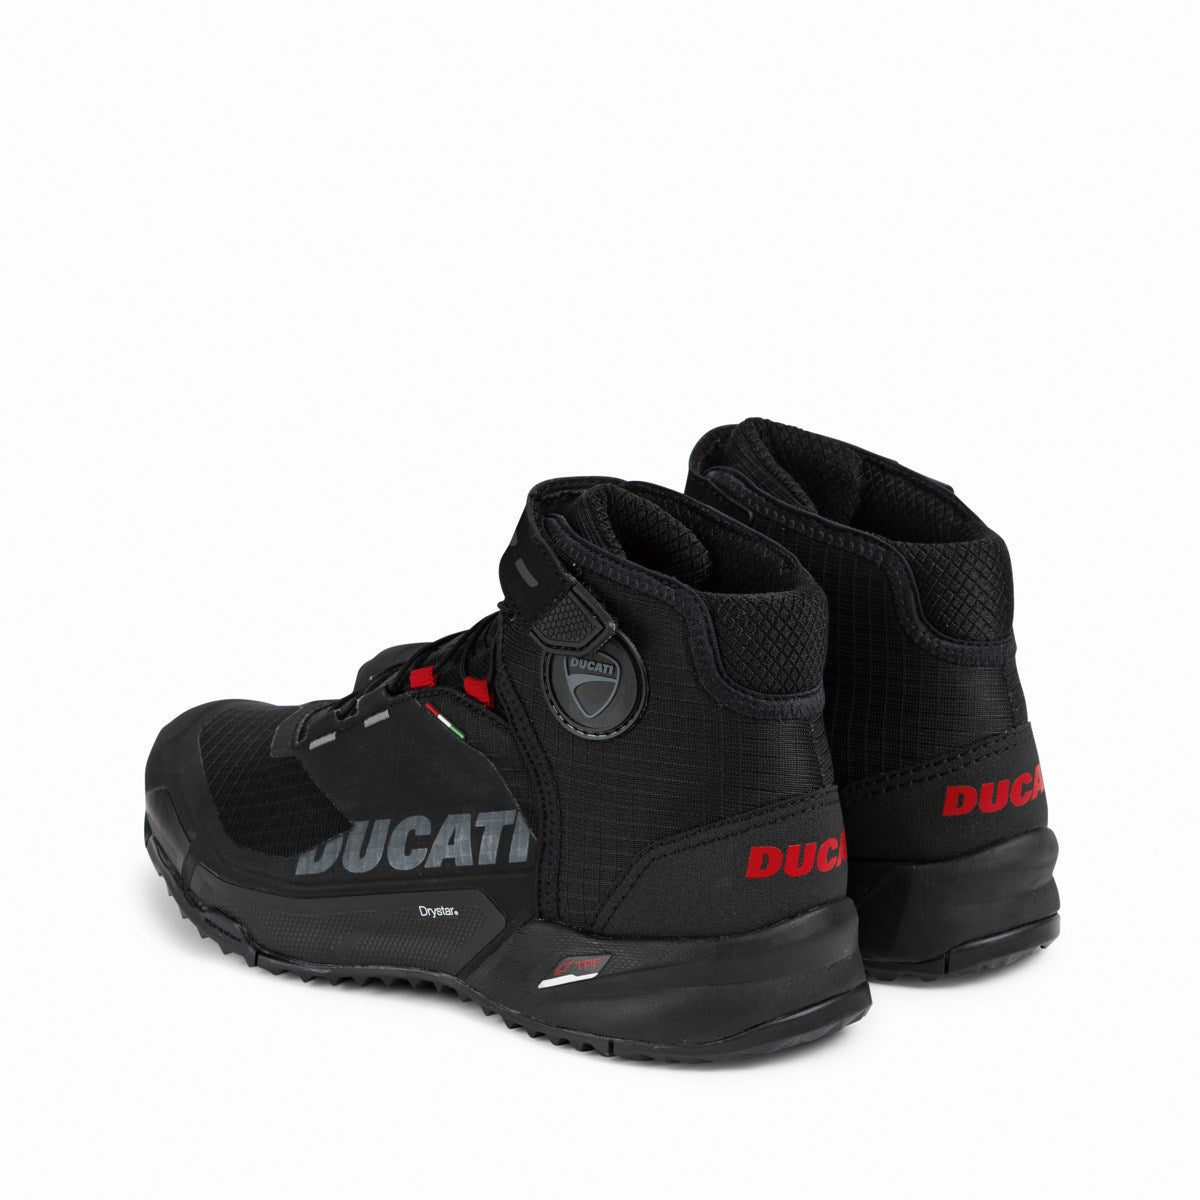 Ducati City Motorcycle footwear